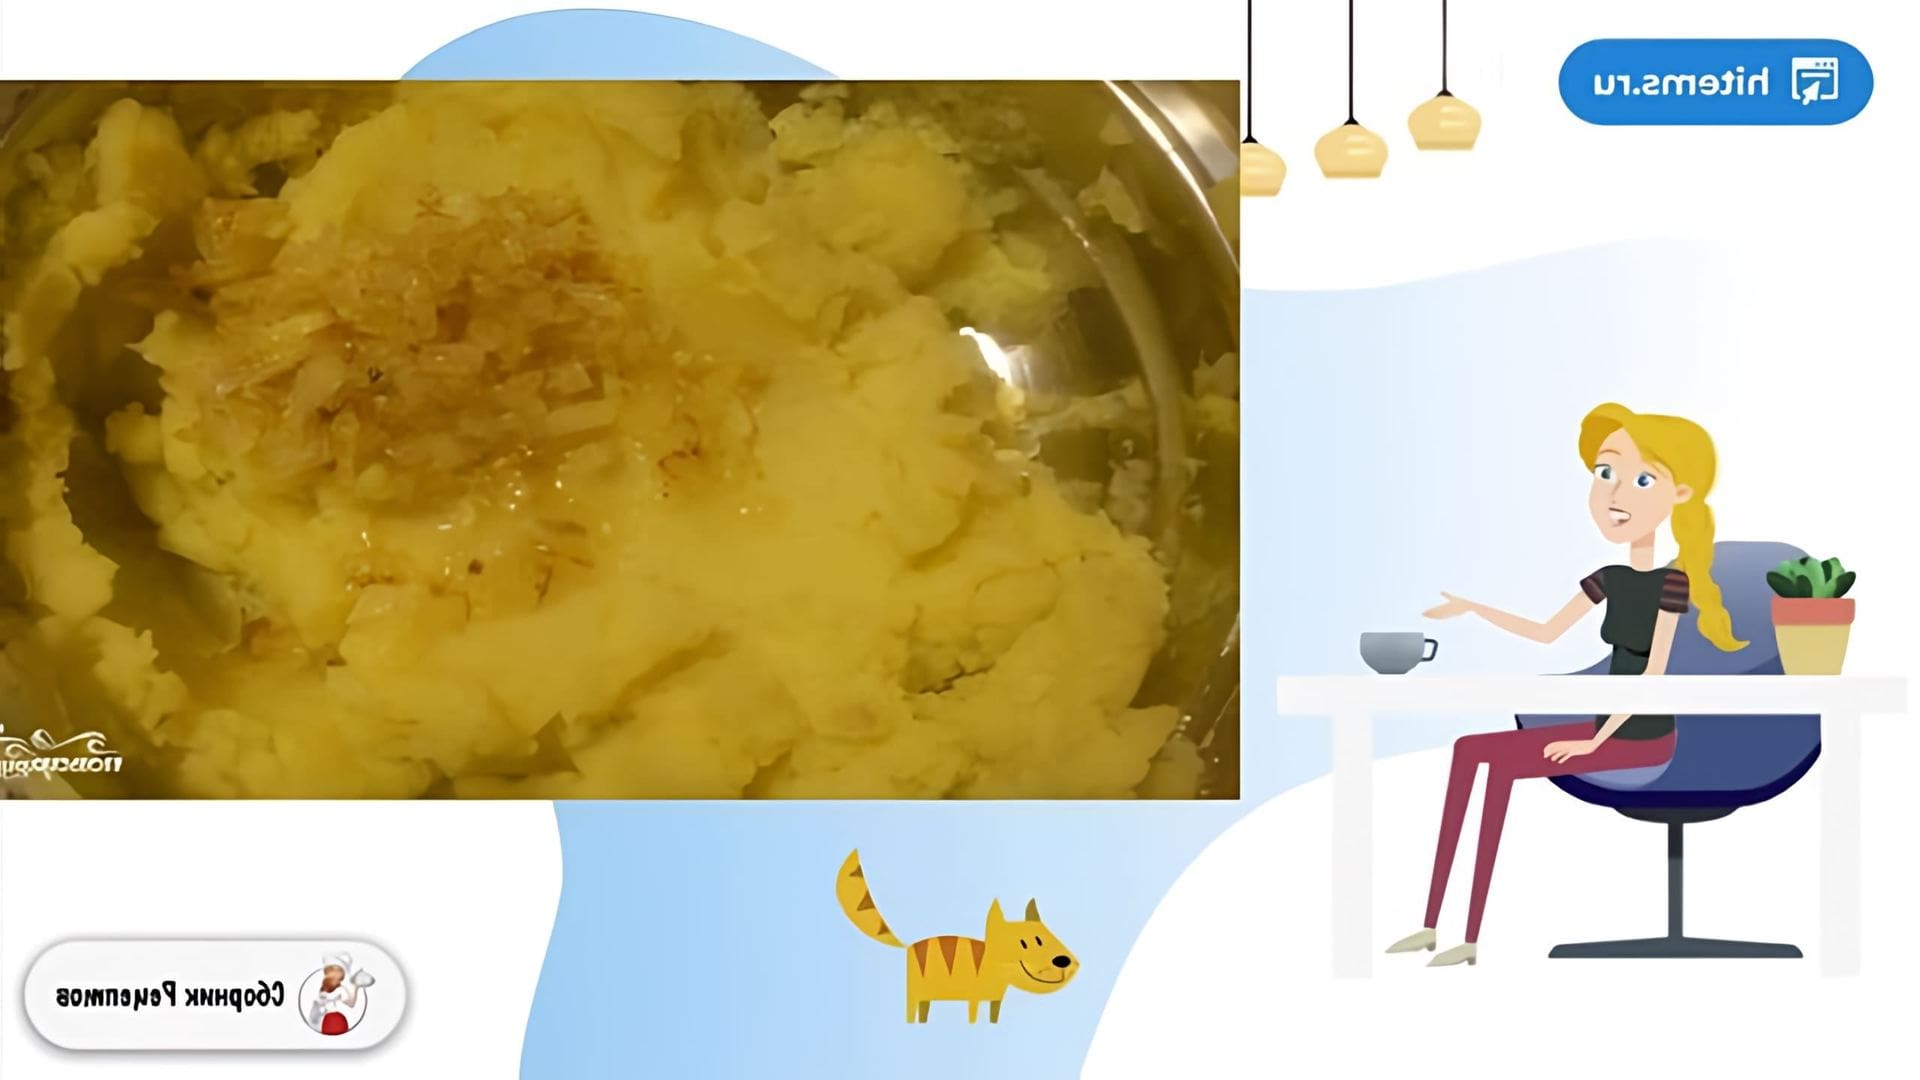 В этом видео демонстрируется рецепт приготовления картофельных котлет в мультиварке